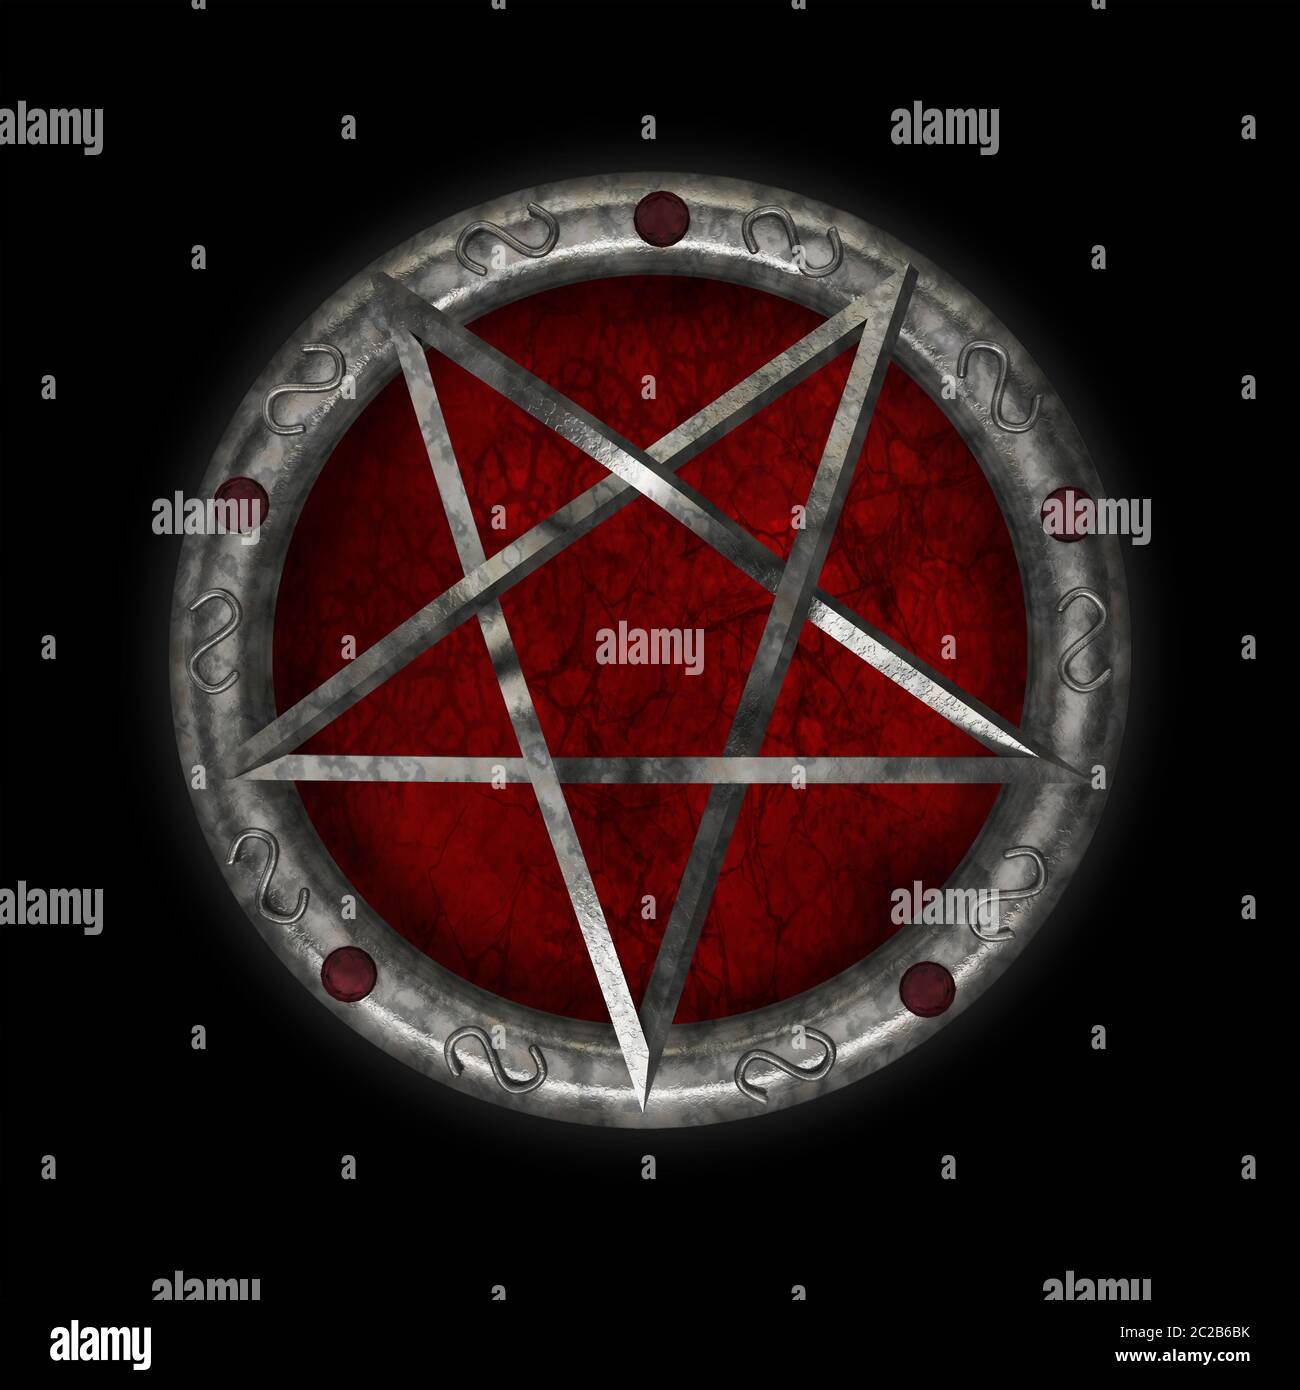 pentacle symbol star magic pentagram mystic religion occult 3D Stock Photo